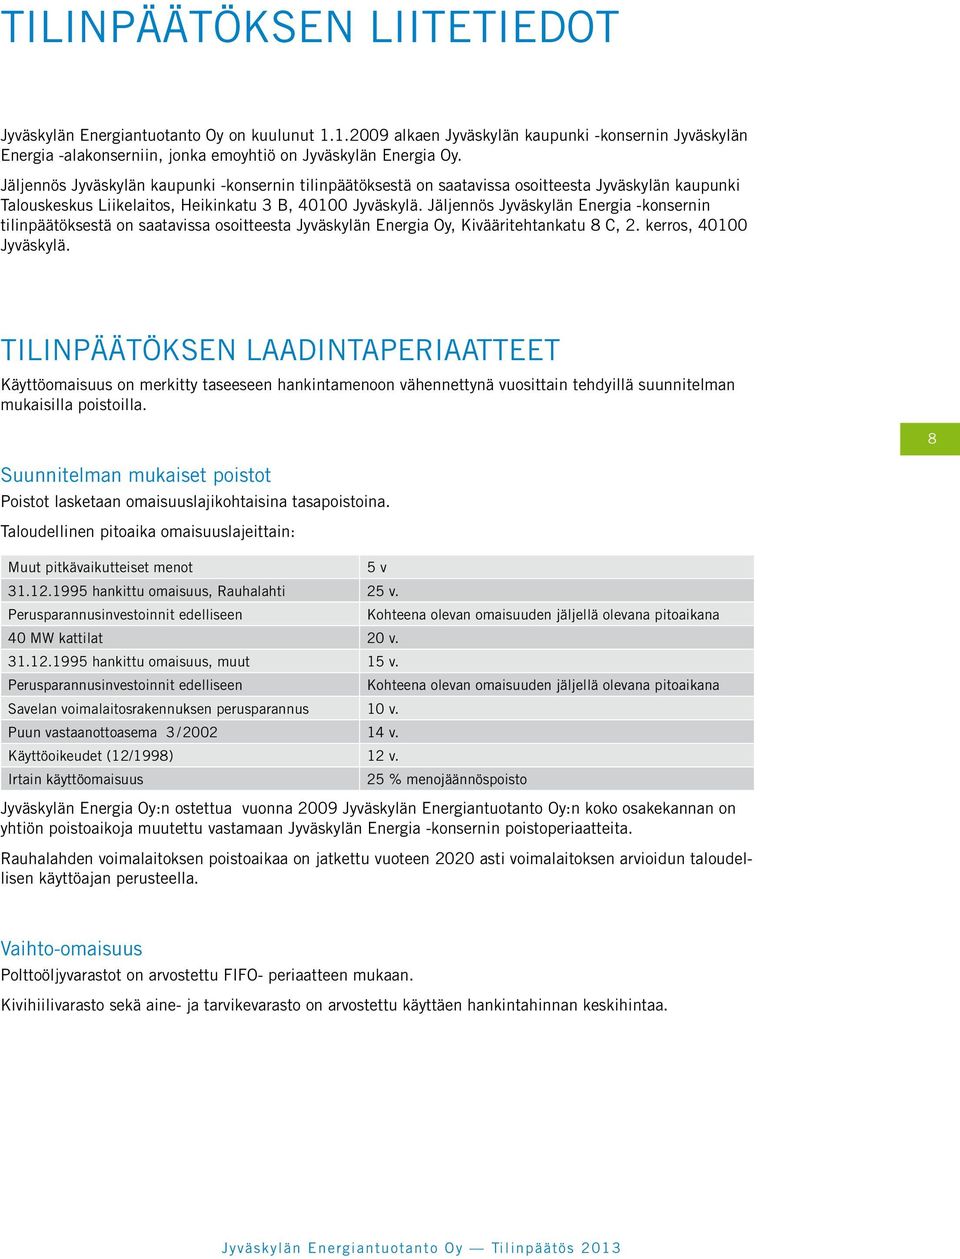 Jäljennös Jyväskylän Energia -konsernin tilinpäätöksestä on saatavissa osoitteesta Jyväskylän Energia Oy, Kivääritehtankatu 8 C, 2. kerros, 40100 Jyväskylä.